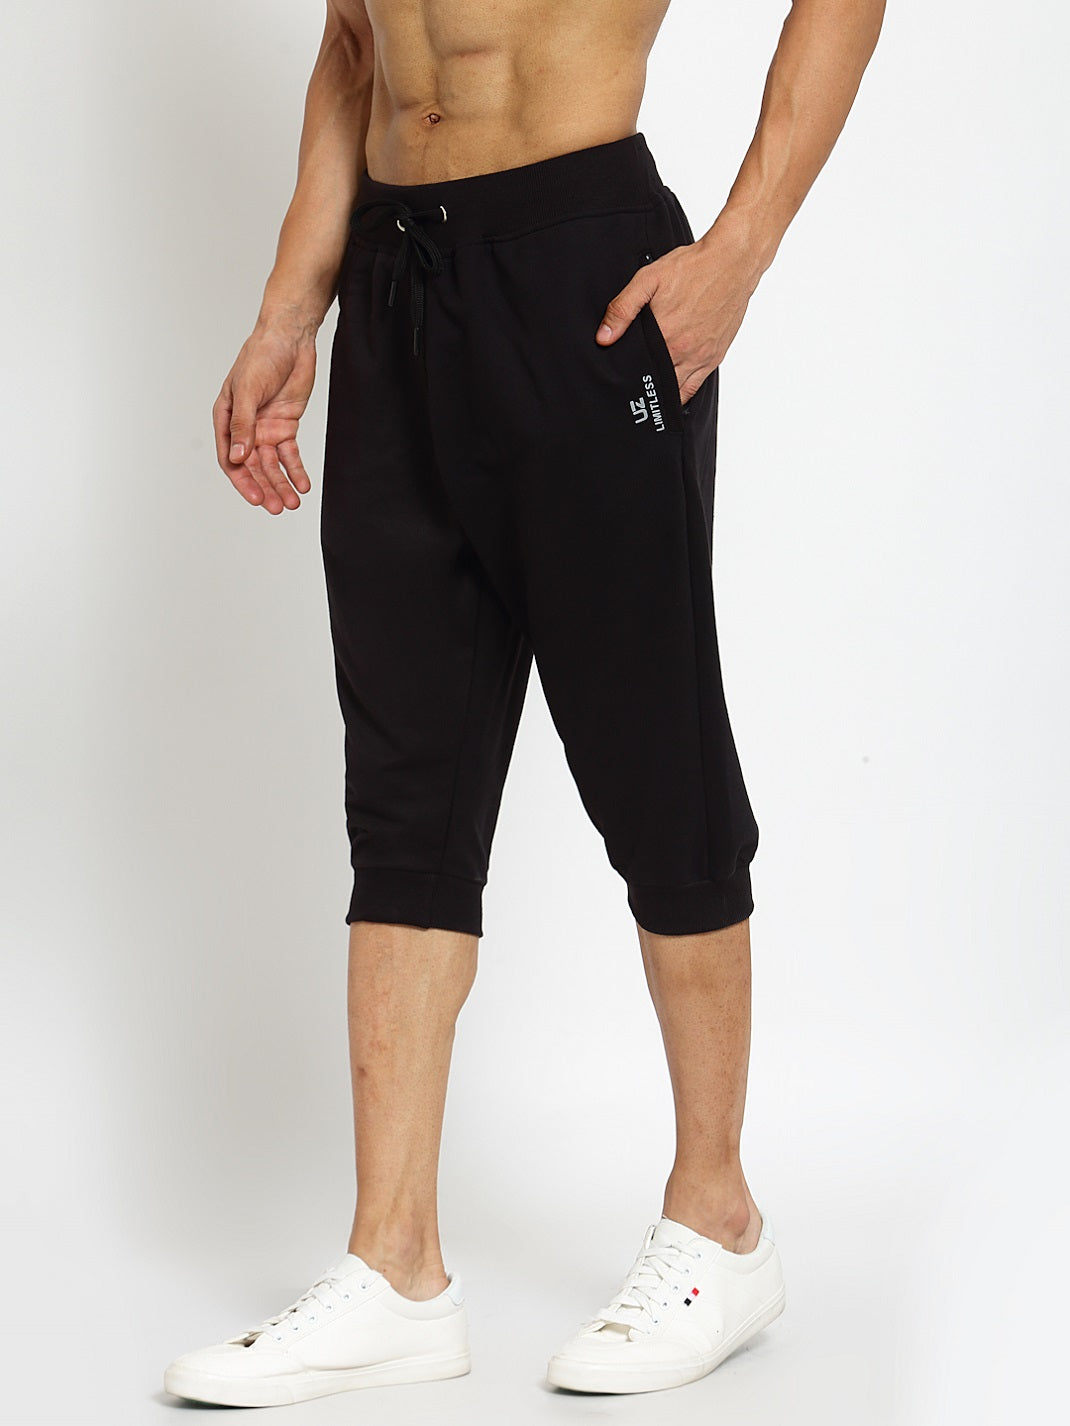 Skratta Kjell 3/4 Pants - Shorts Men's, Buy online